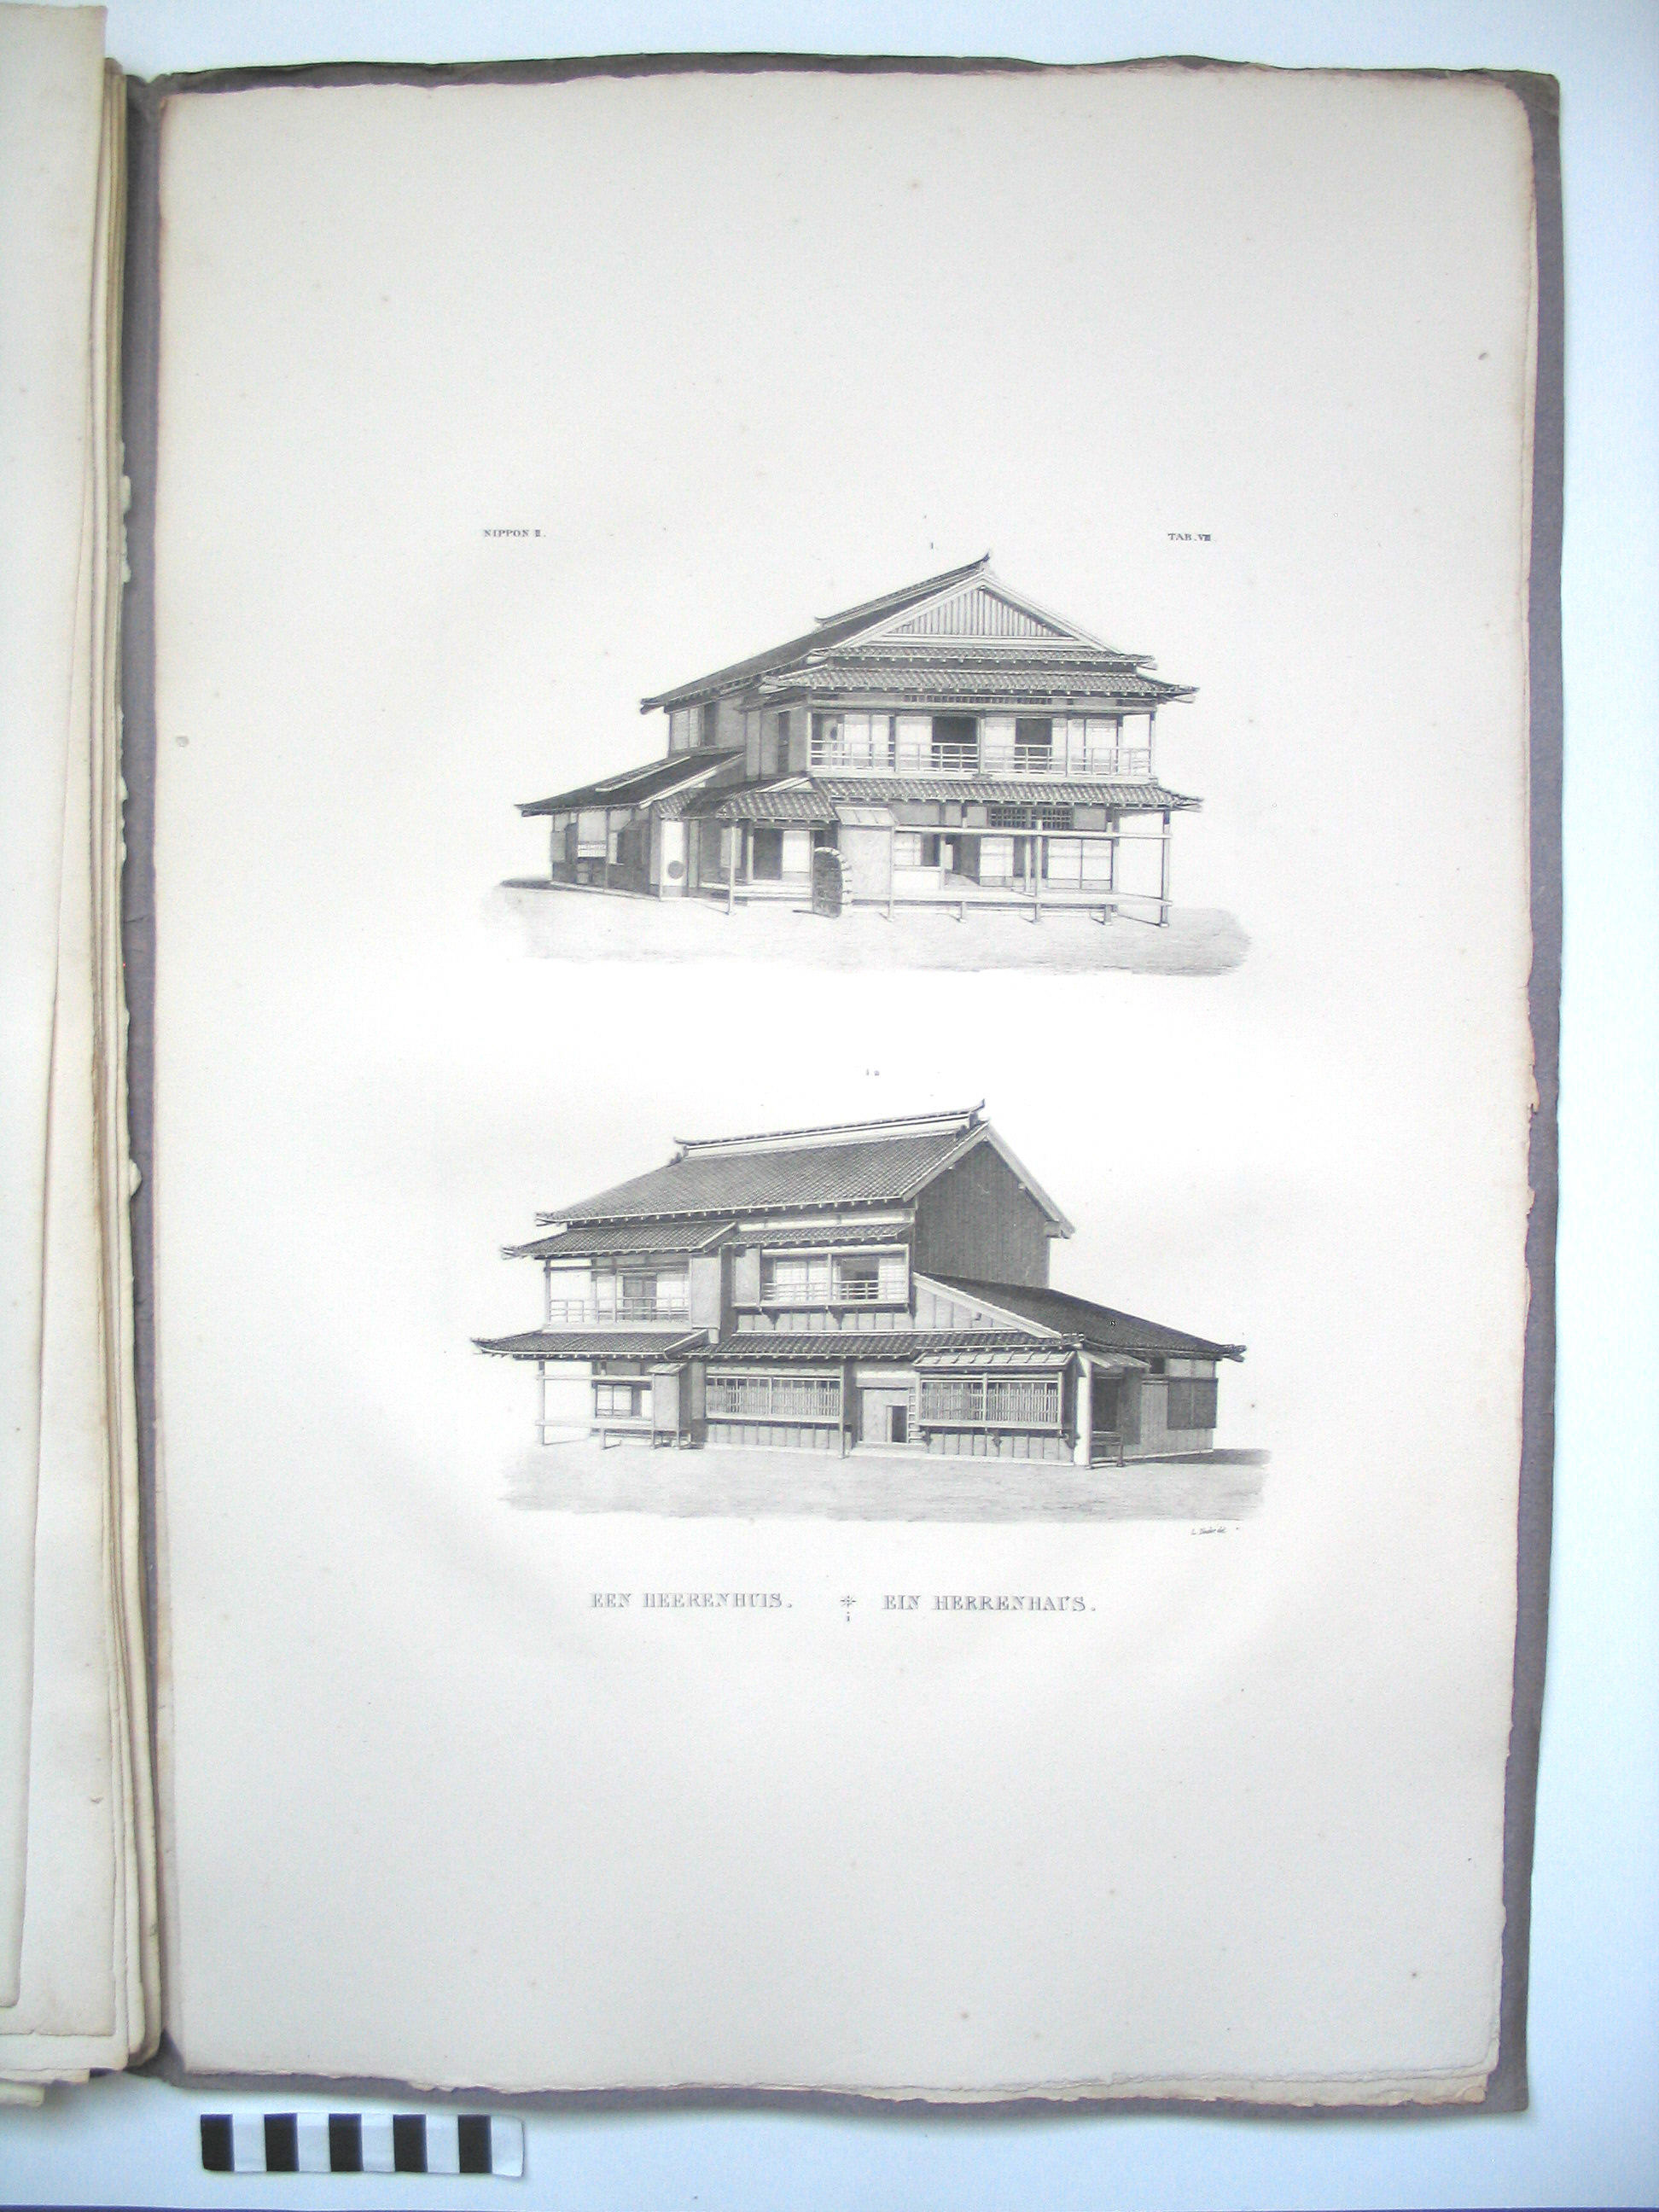  ‘Heerenhuis’, gezien vanuit twee gezichtspunten. Lithografie uit Nippon, getekend door L. Nader.